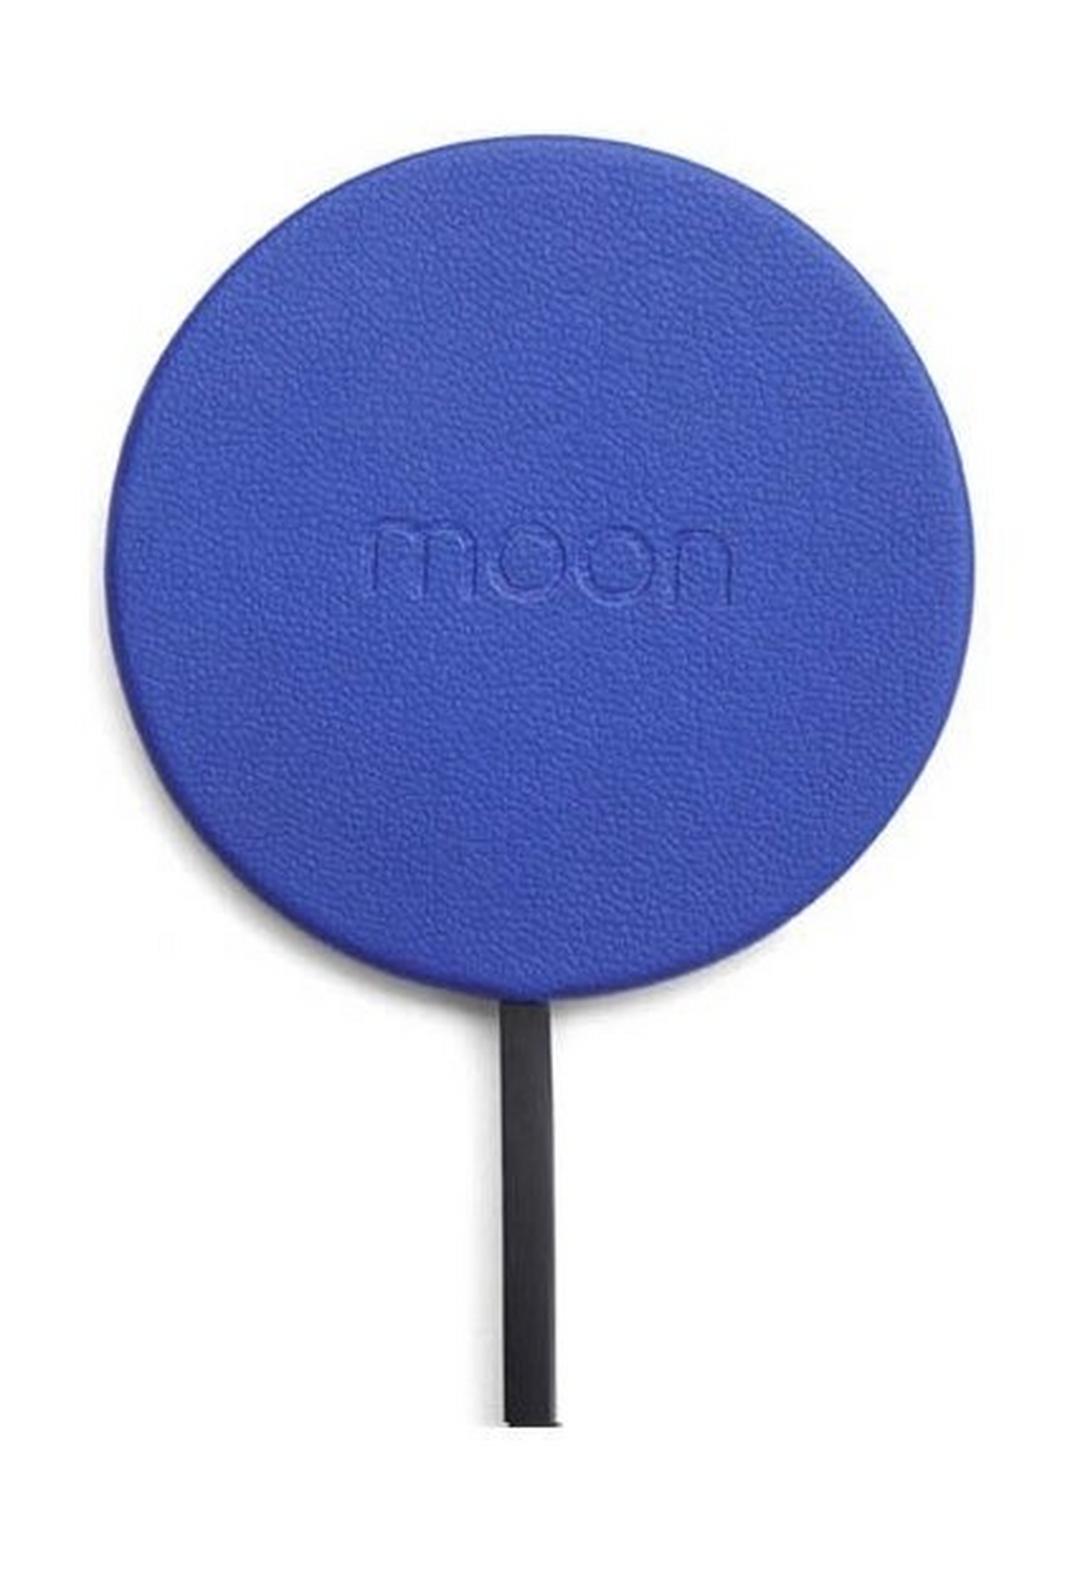 Moon Waterproof Charging Pad - Blue Leather